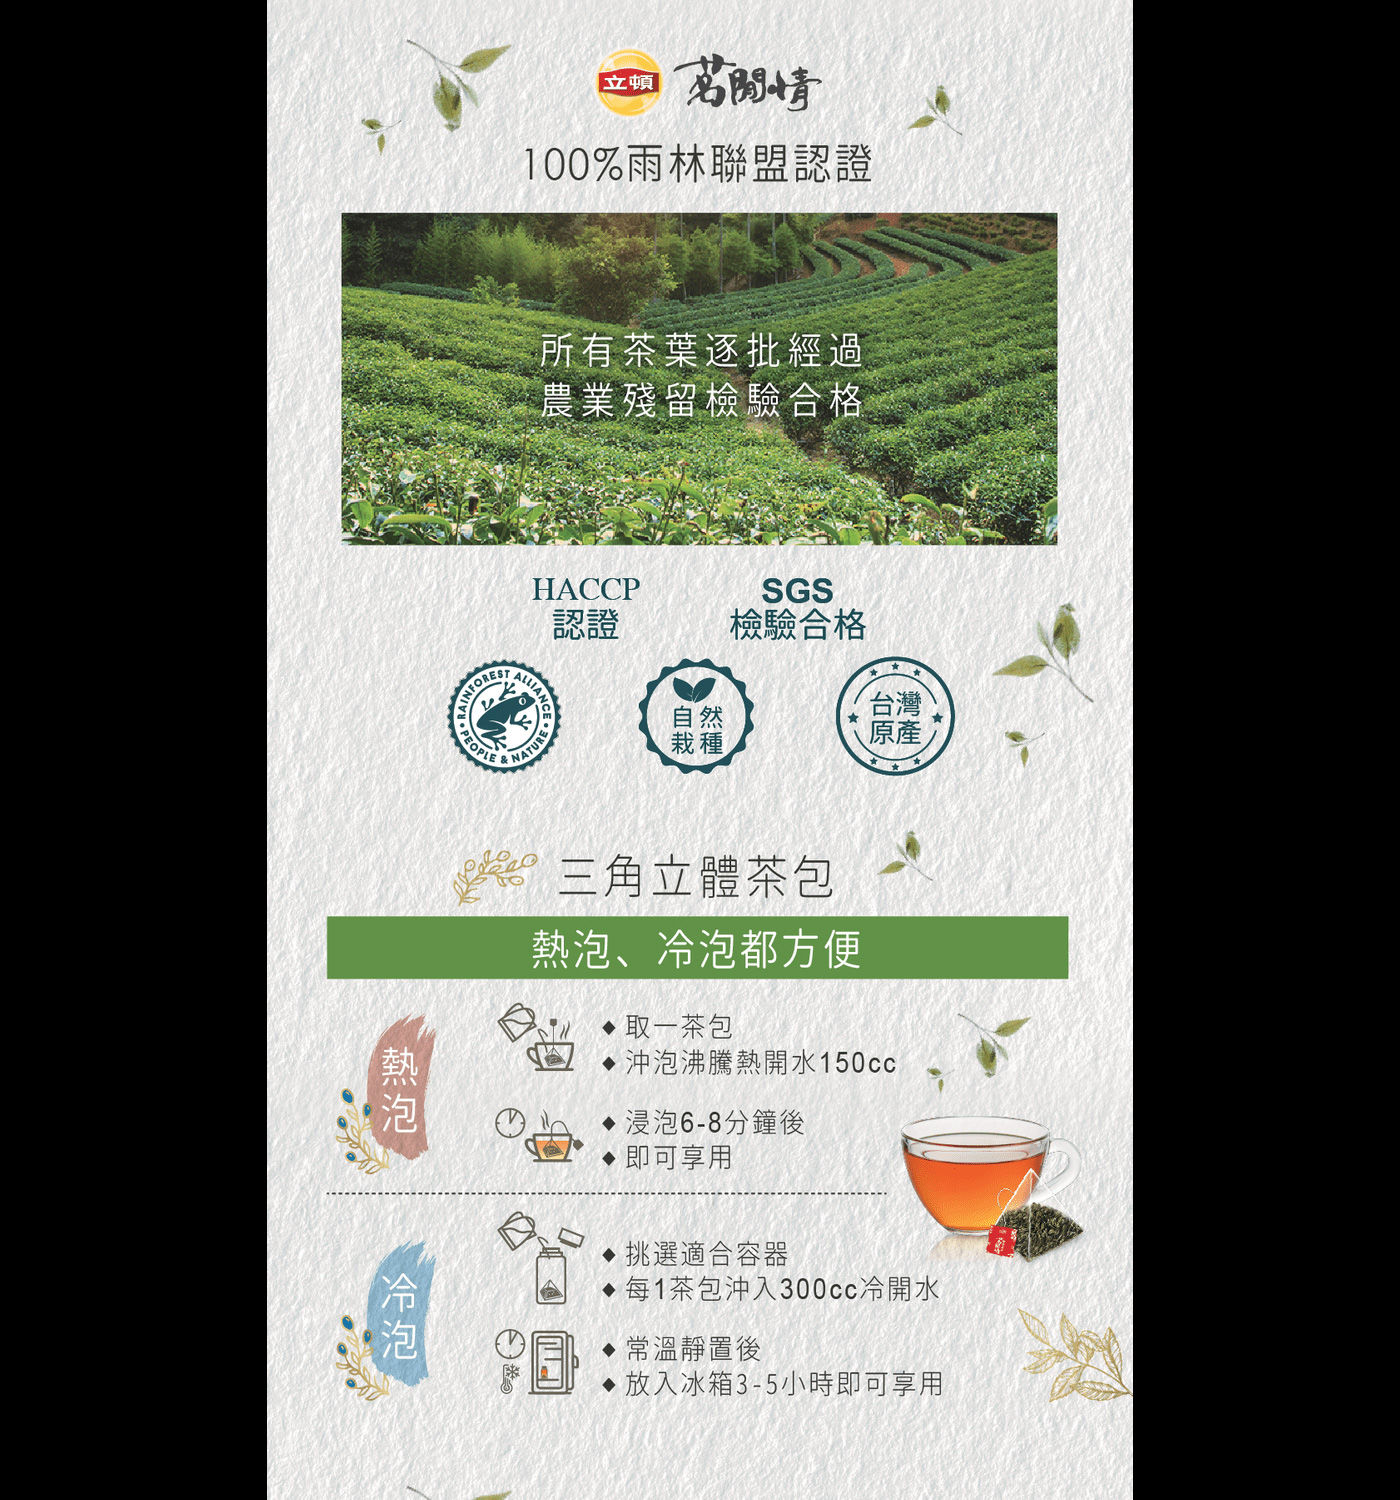 立頓 茗閒情台灣綠茶茶包 經過農業殘留檢驗合格 使用三角立體茶包 熱泡冷泡都方便